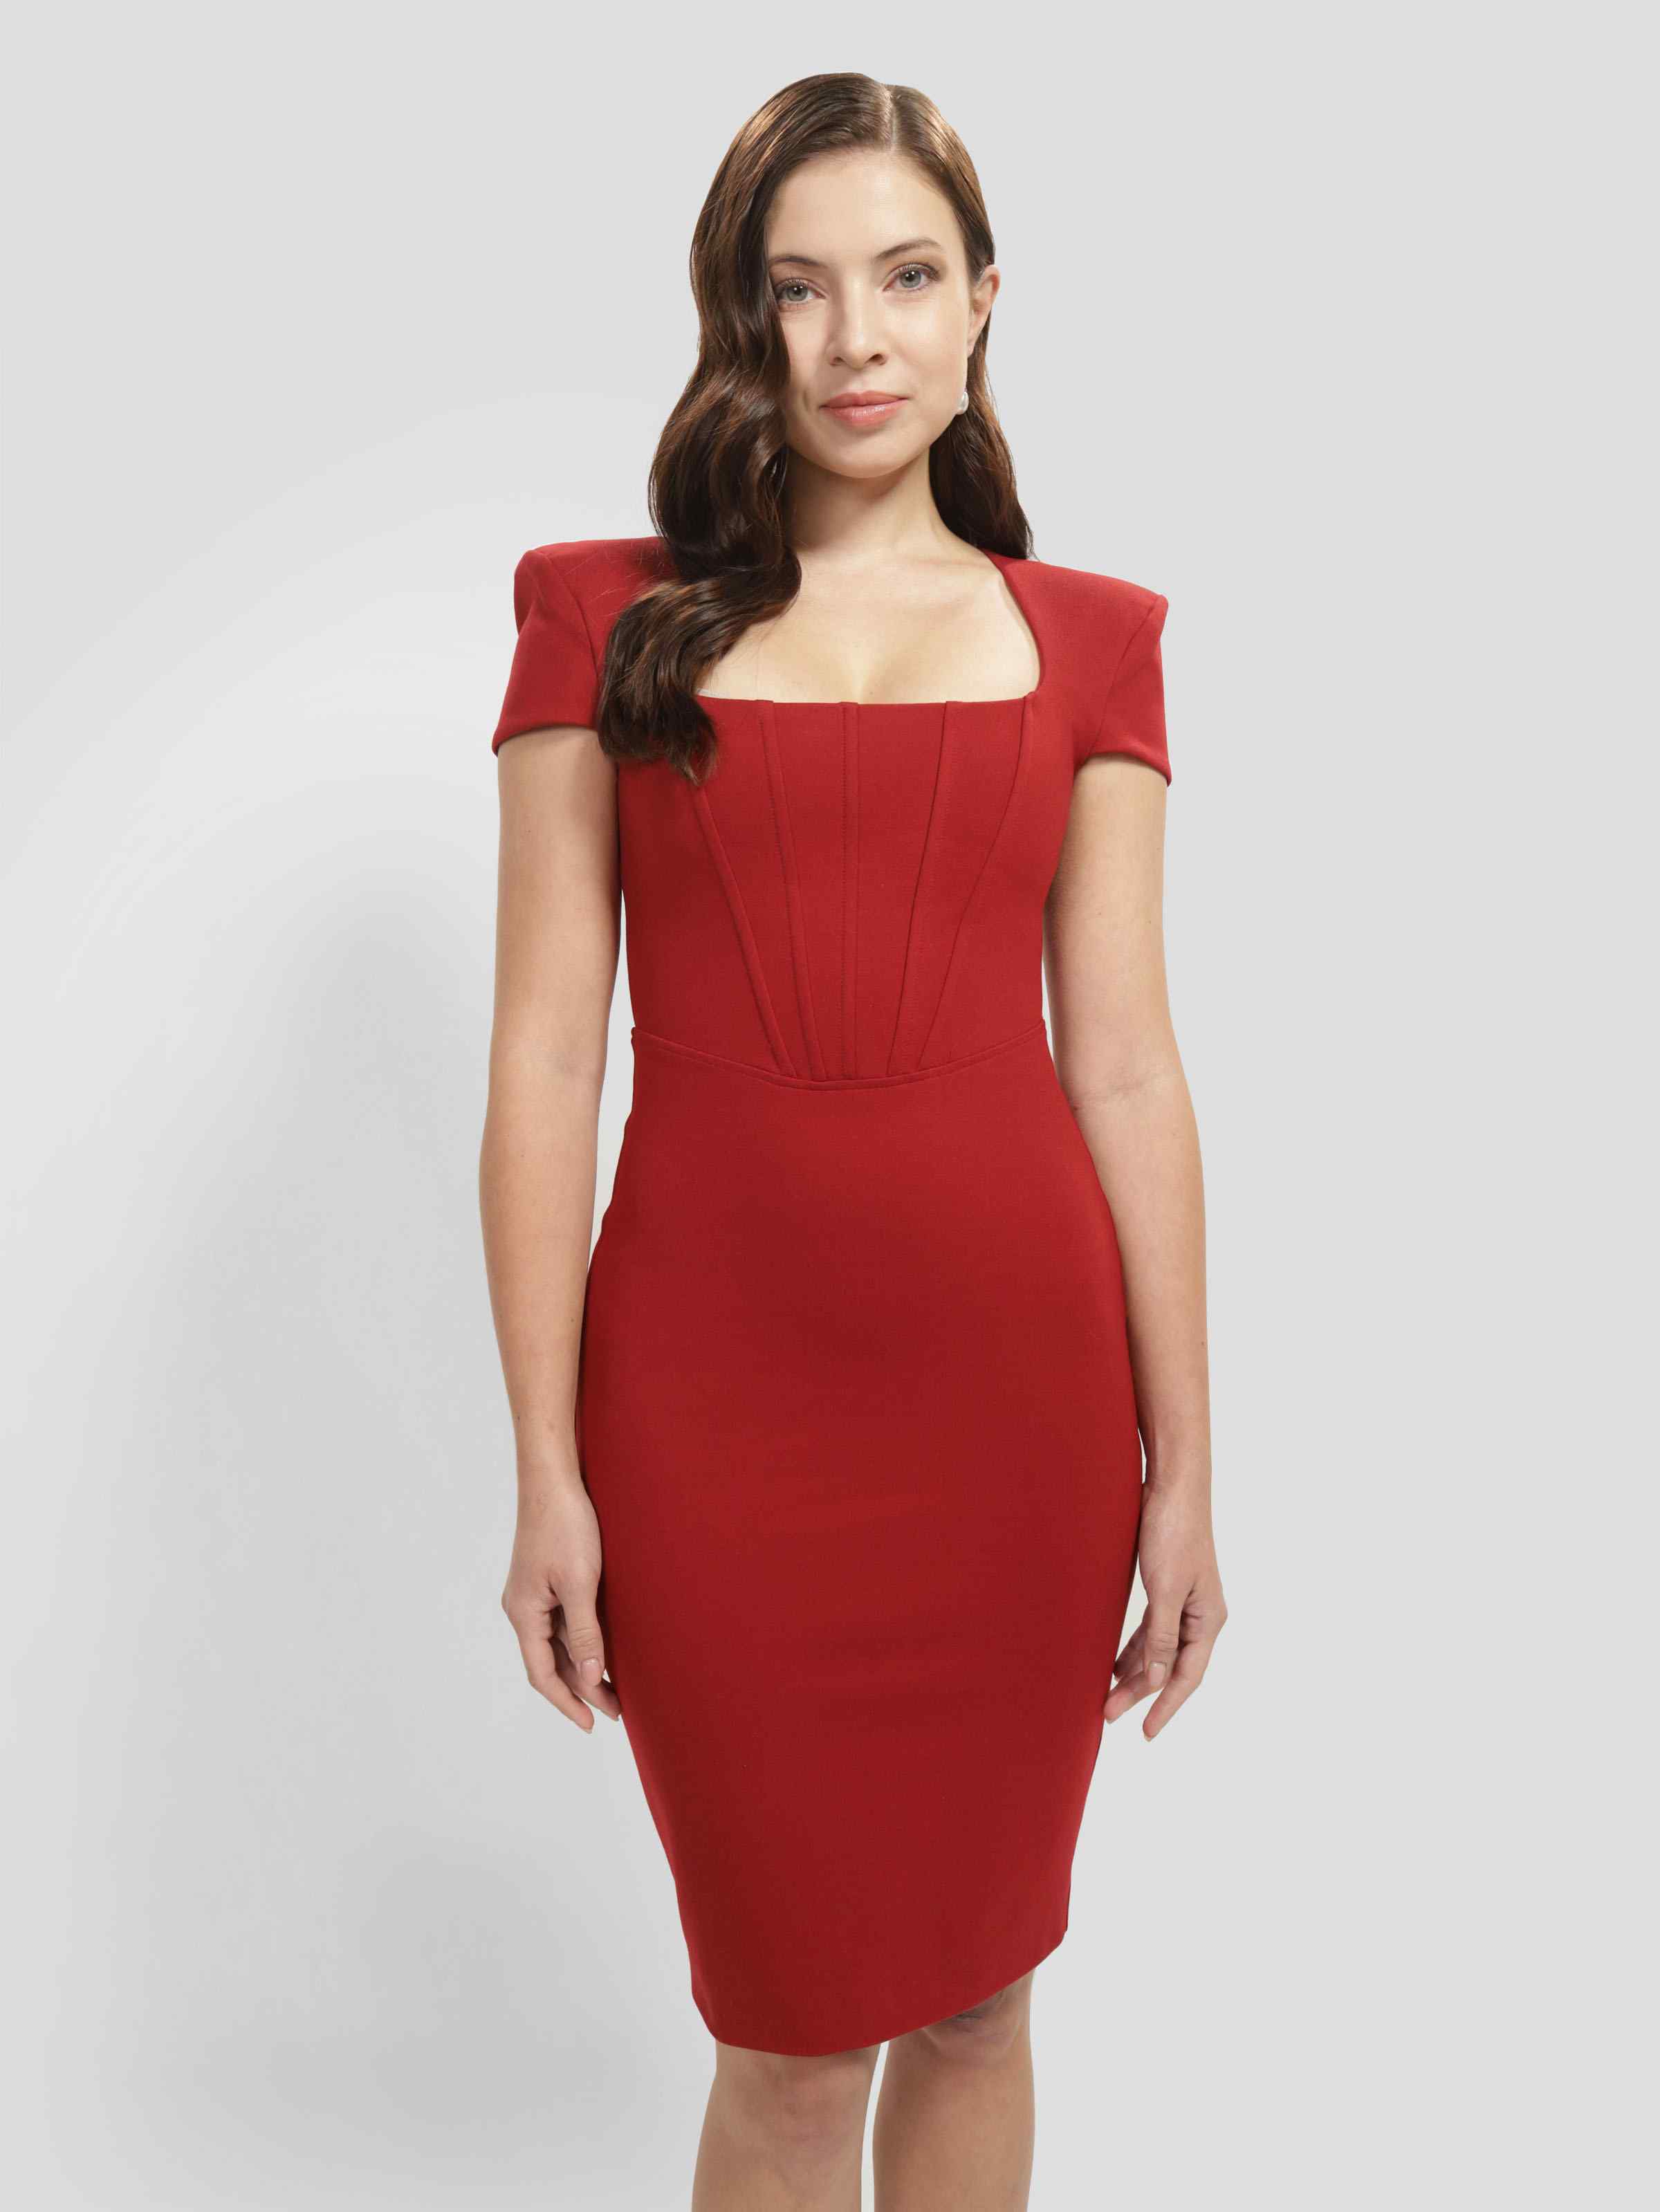 Comprar online Ropa GUESS mujer  Rebajas ropa de marca – Pasarela Roja